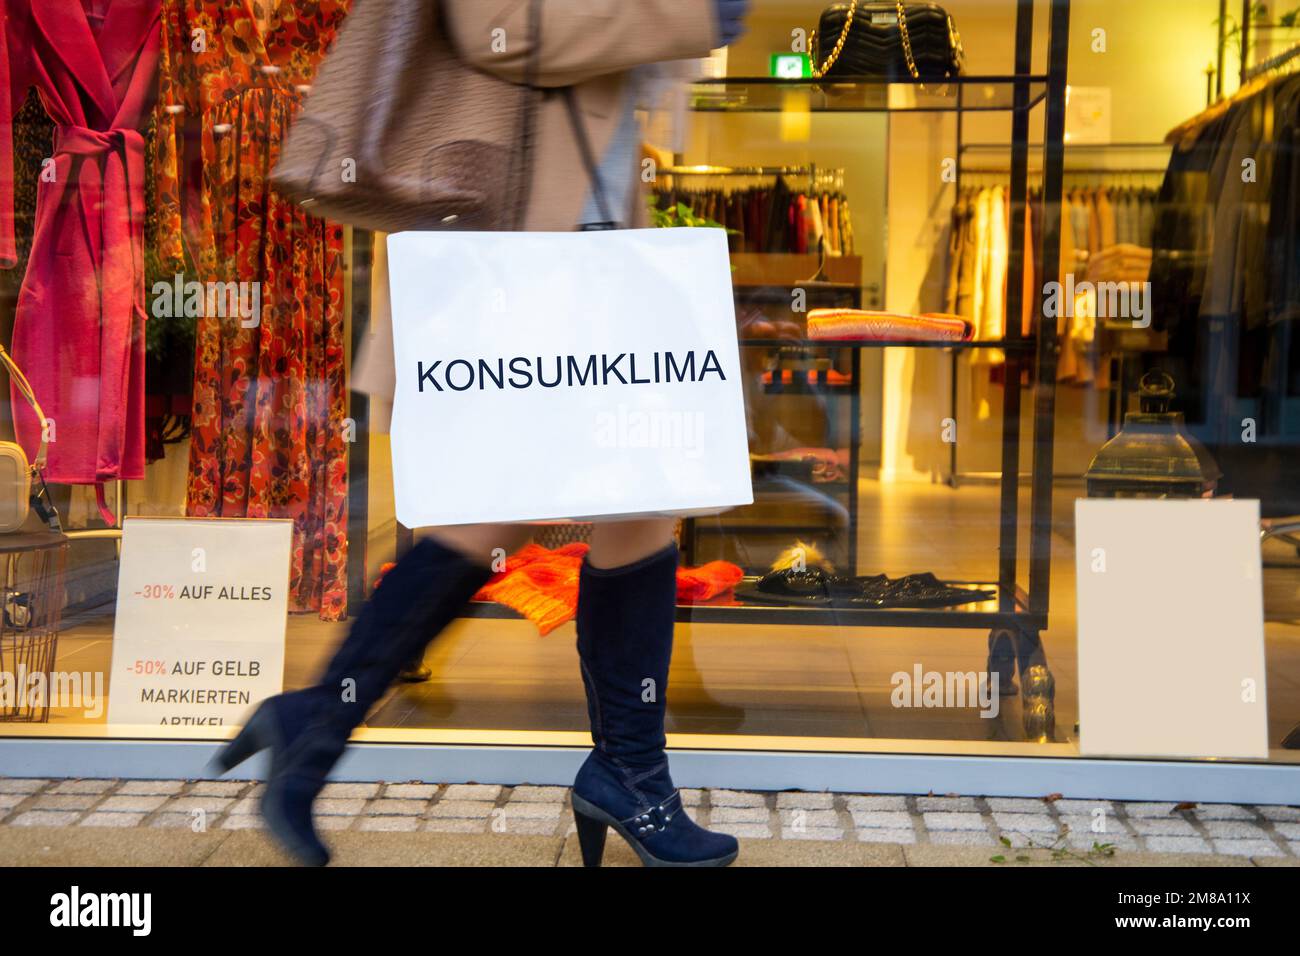 Symbolbild Konsum: Frau beim Einkaufen, auf der Einkaufstüte steht  Konsumklima (Composing, Model released) Stock Photo